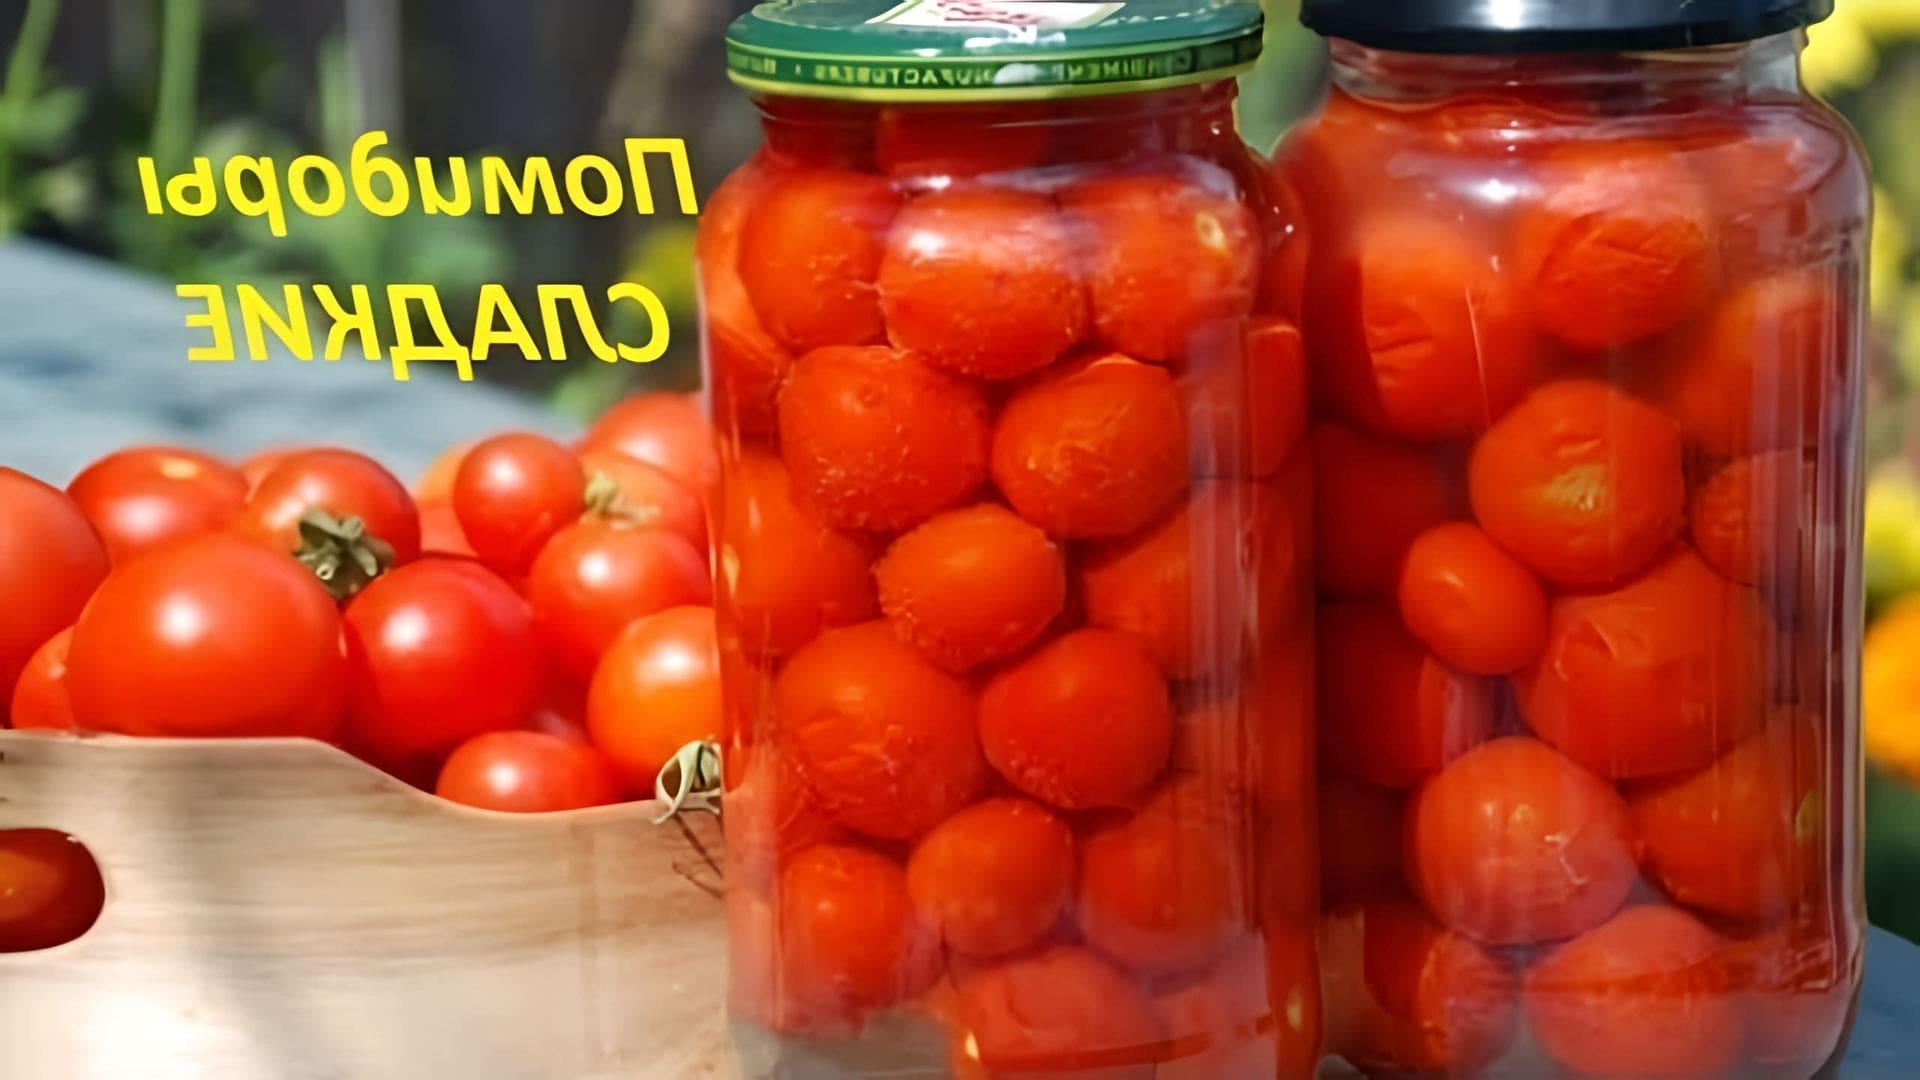 В этом видео демонстрируется процесс приготовления маринованных сладких помидоров на зиму